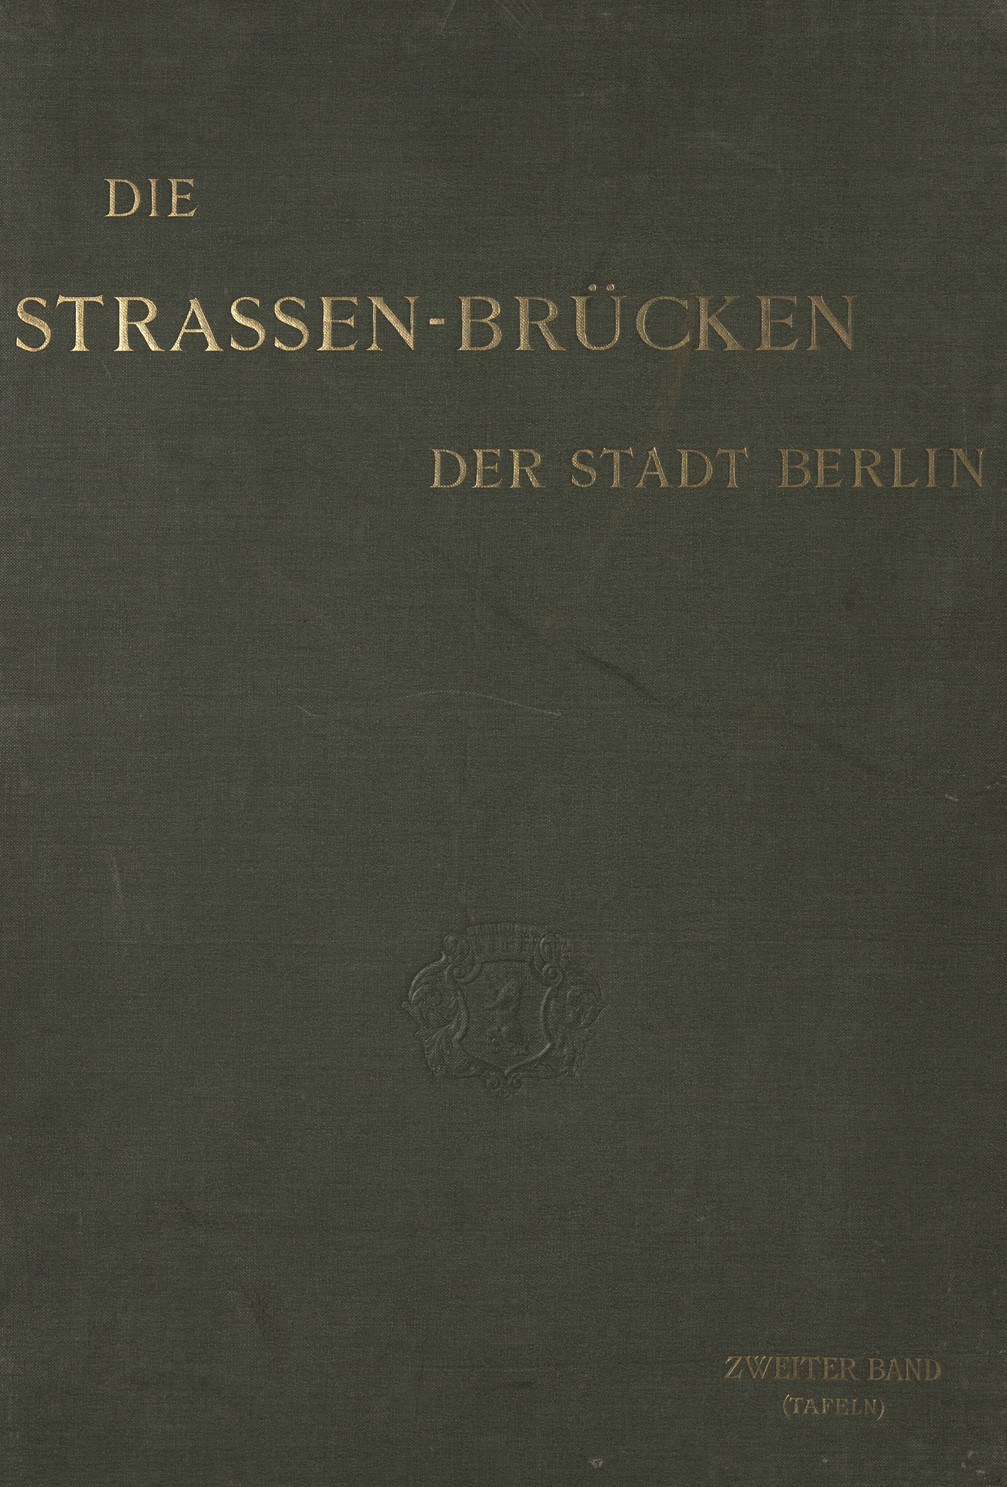 Die Strassen-Brücken der Stadt Berlin. Bd. 2, (Tafeln)